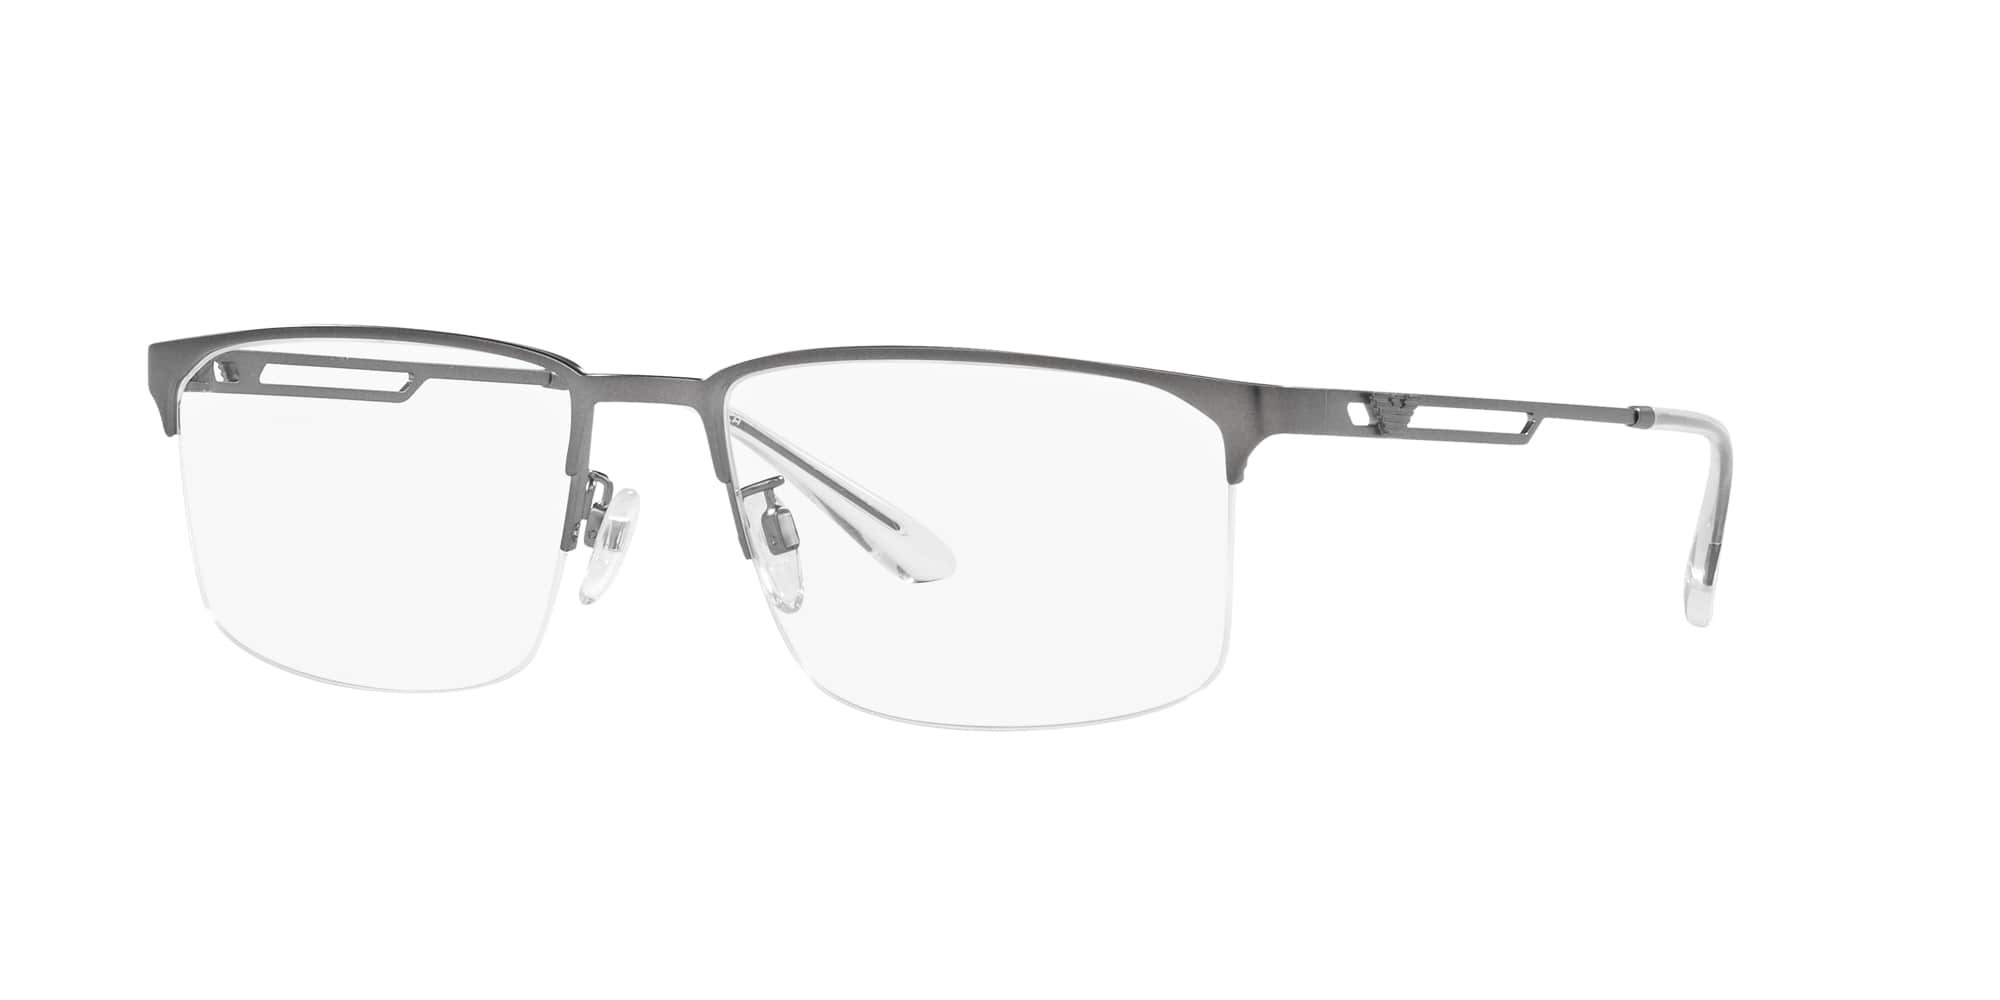 Das Bild zeigt die Korrektionsbrille EA1143 3003 von der Marke Emporio Armani in Gunmetal.